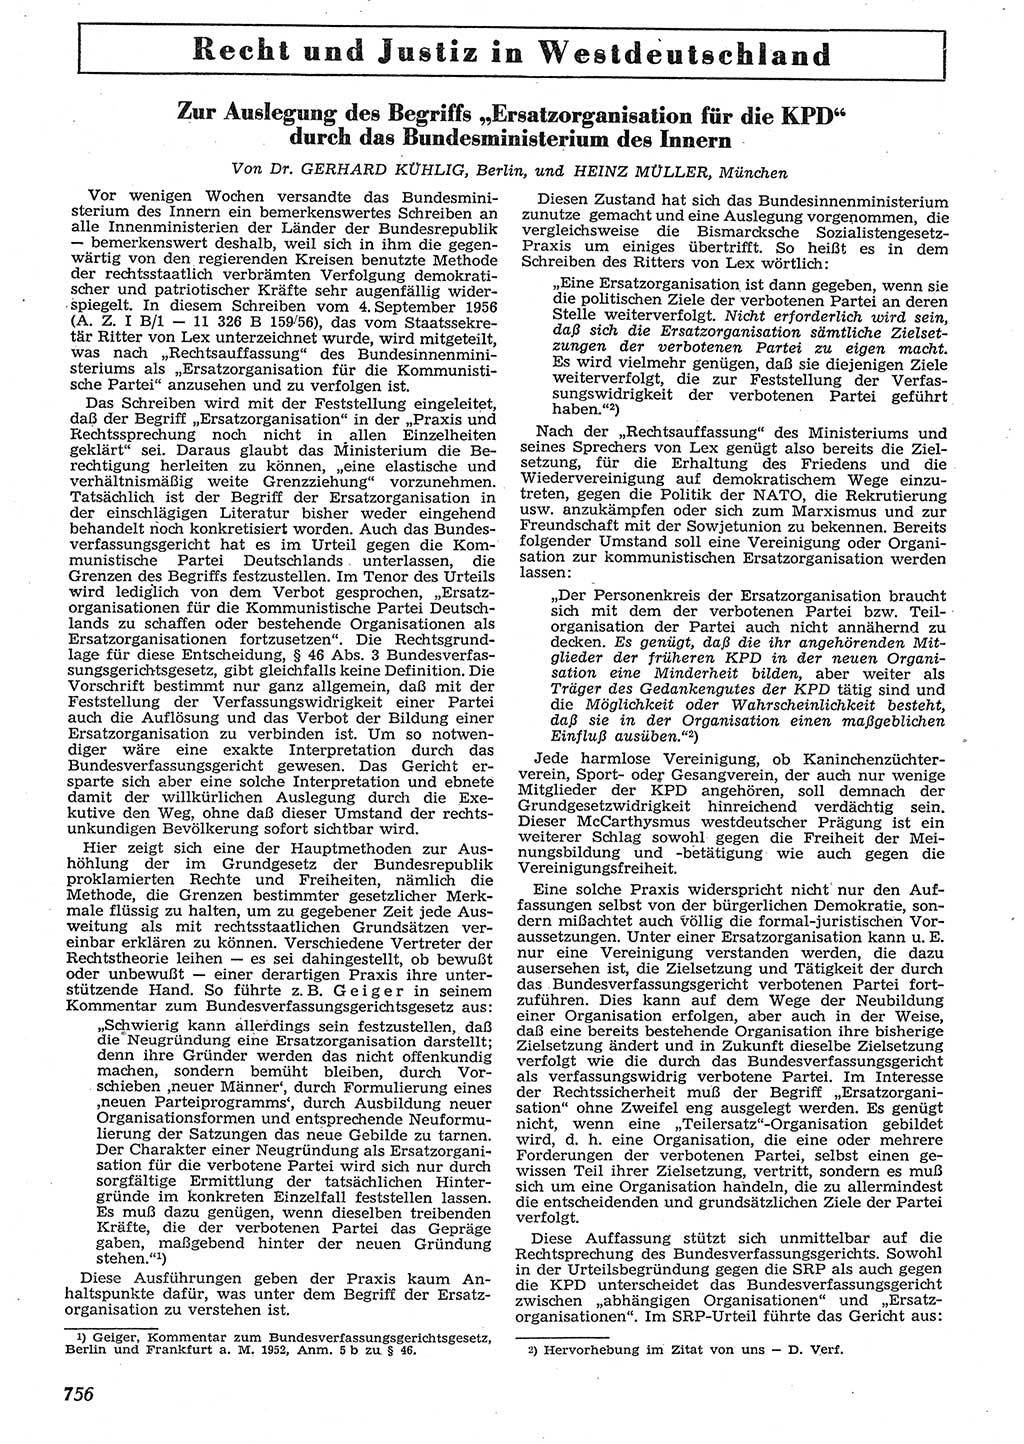 Neue Justiz (NJ), Zeitschrift für Recht und Rechtswissenschaft [Deutsche Demokratische Republik (DDR)], 10. Jahrgang 1956, Seite 756 (NJ DDR 1956, S. 756)